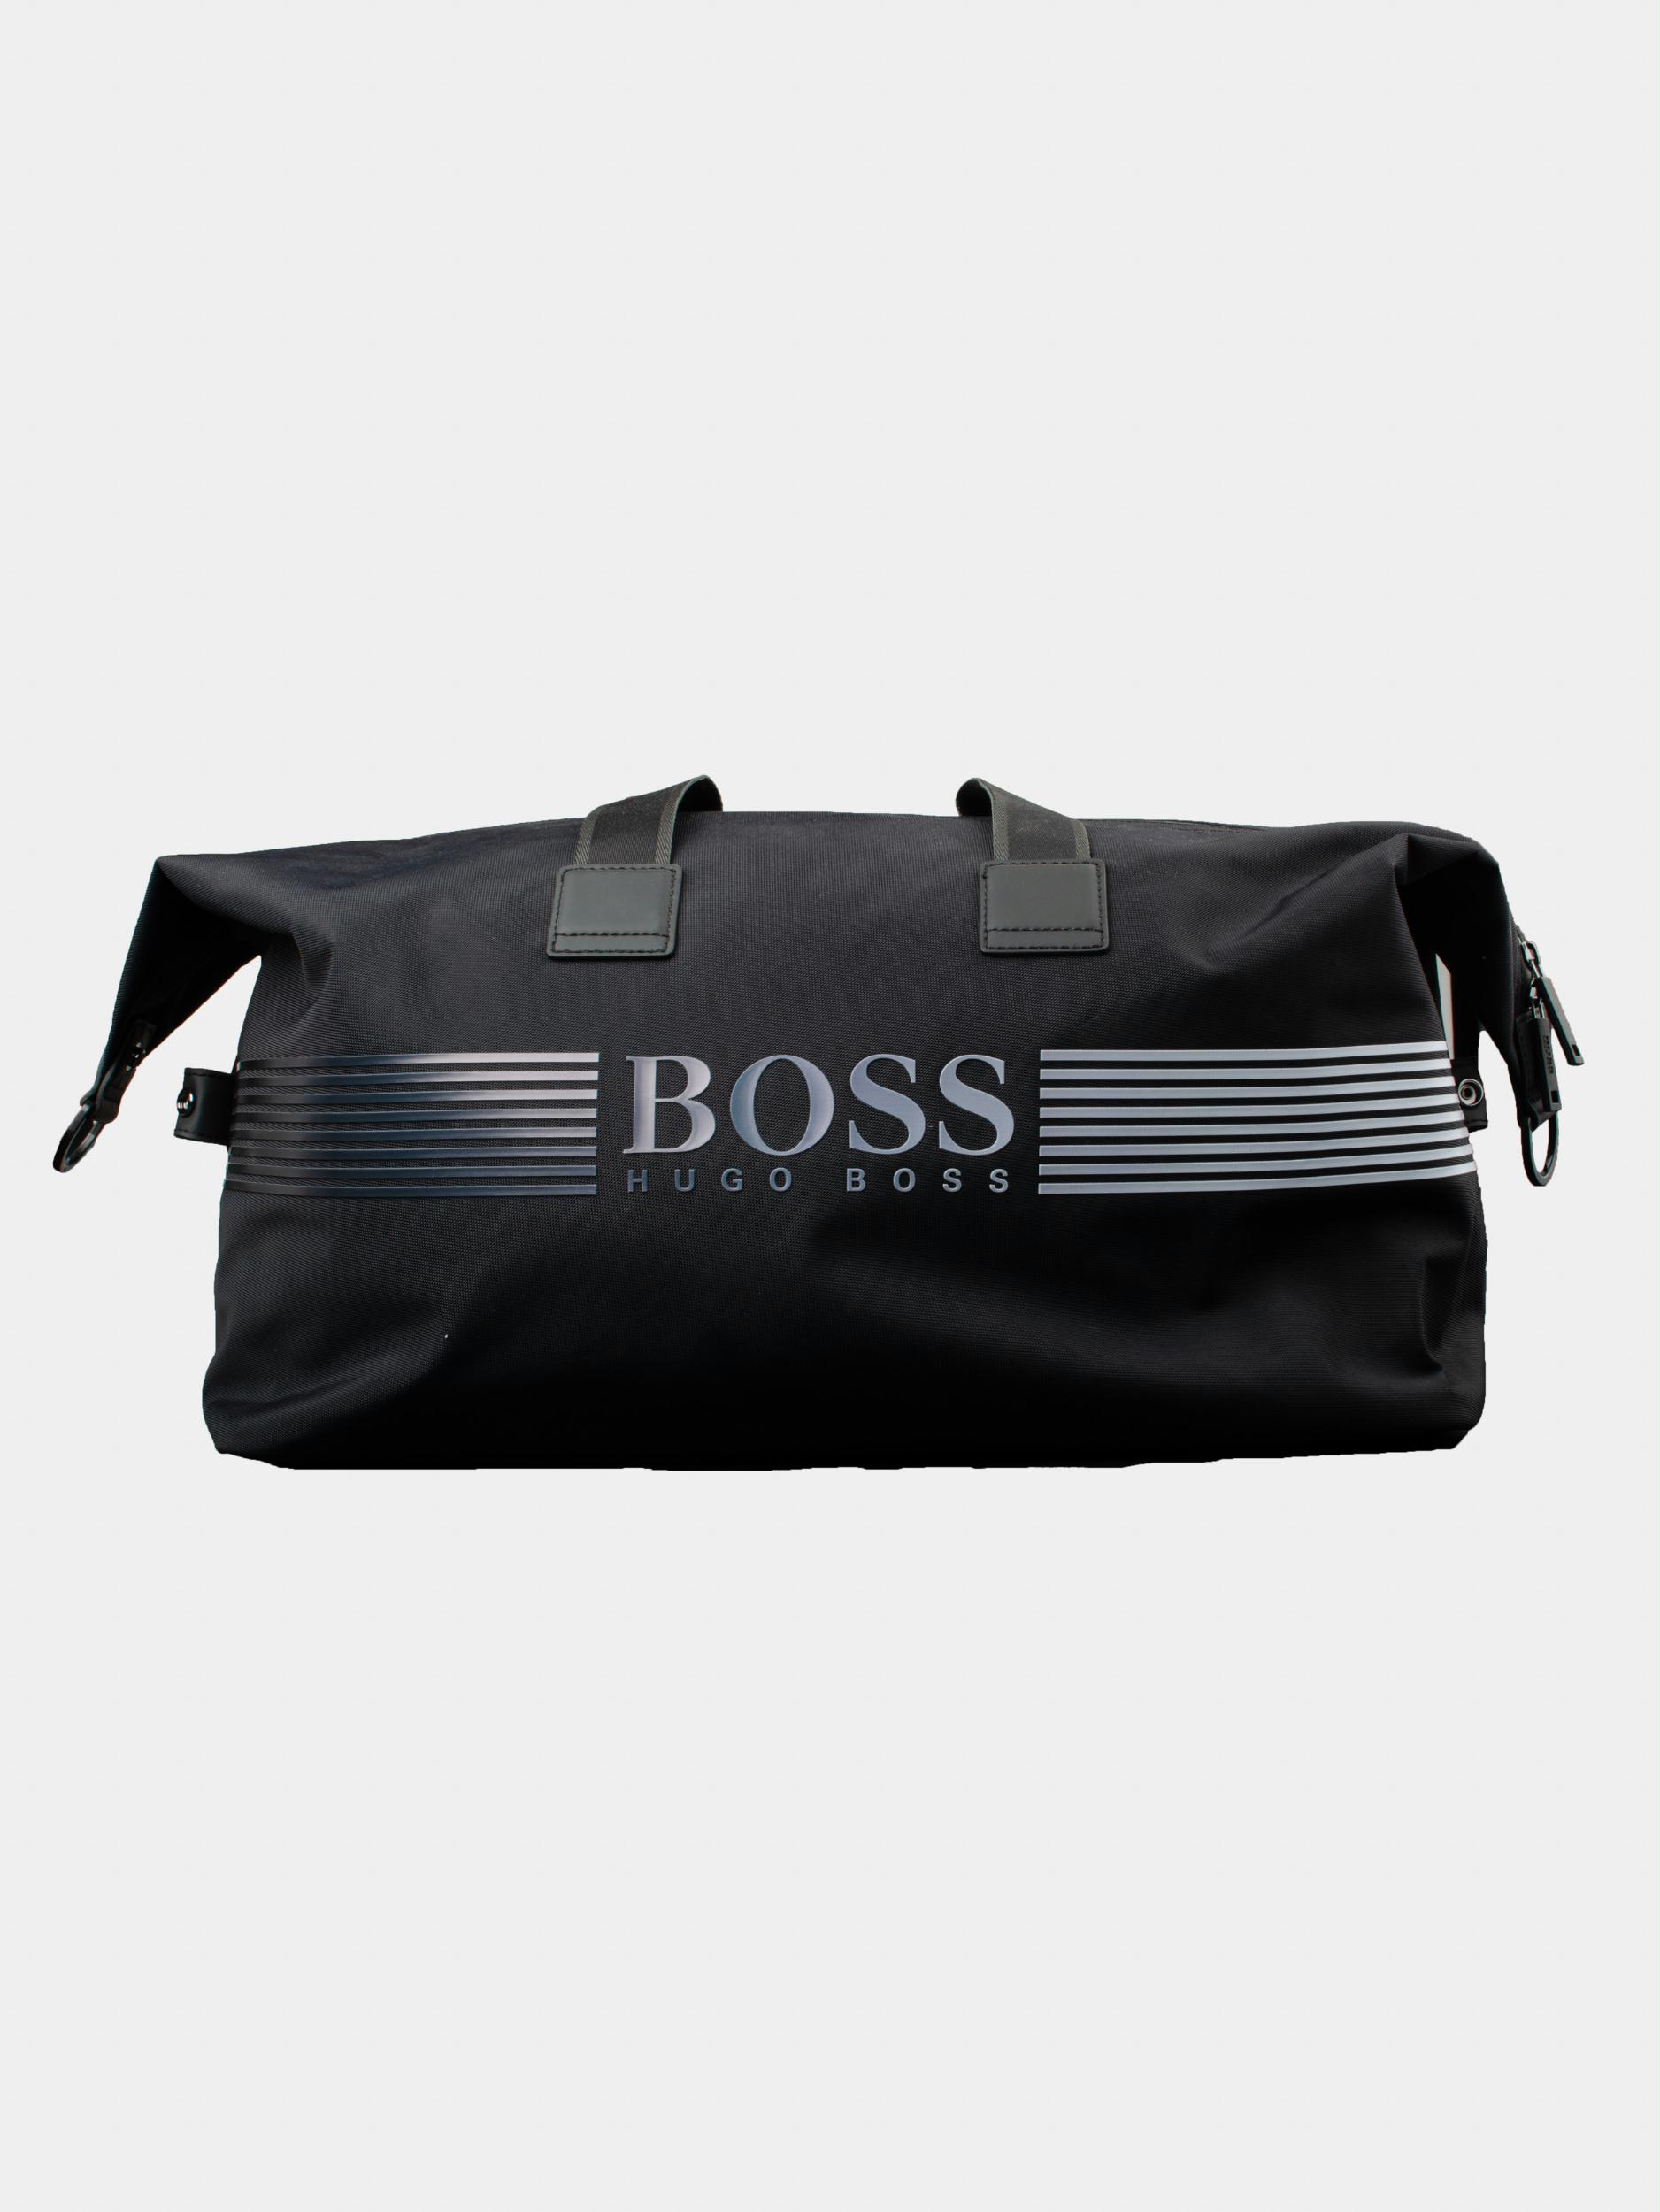 Hugo Boss Tassen Online | Bos Men Shop